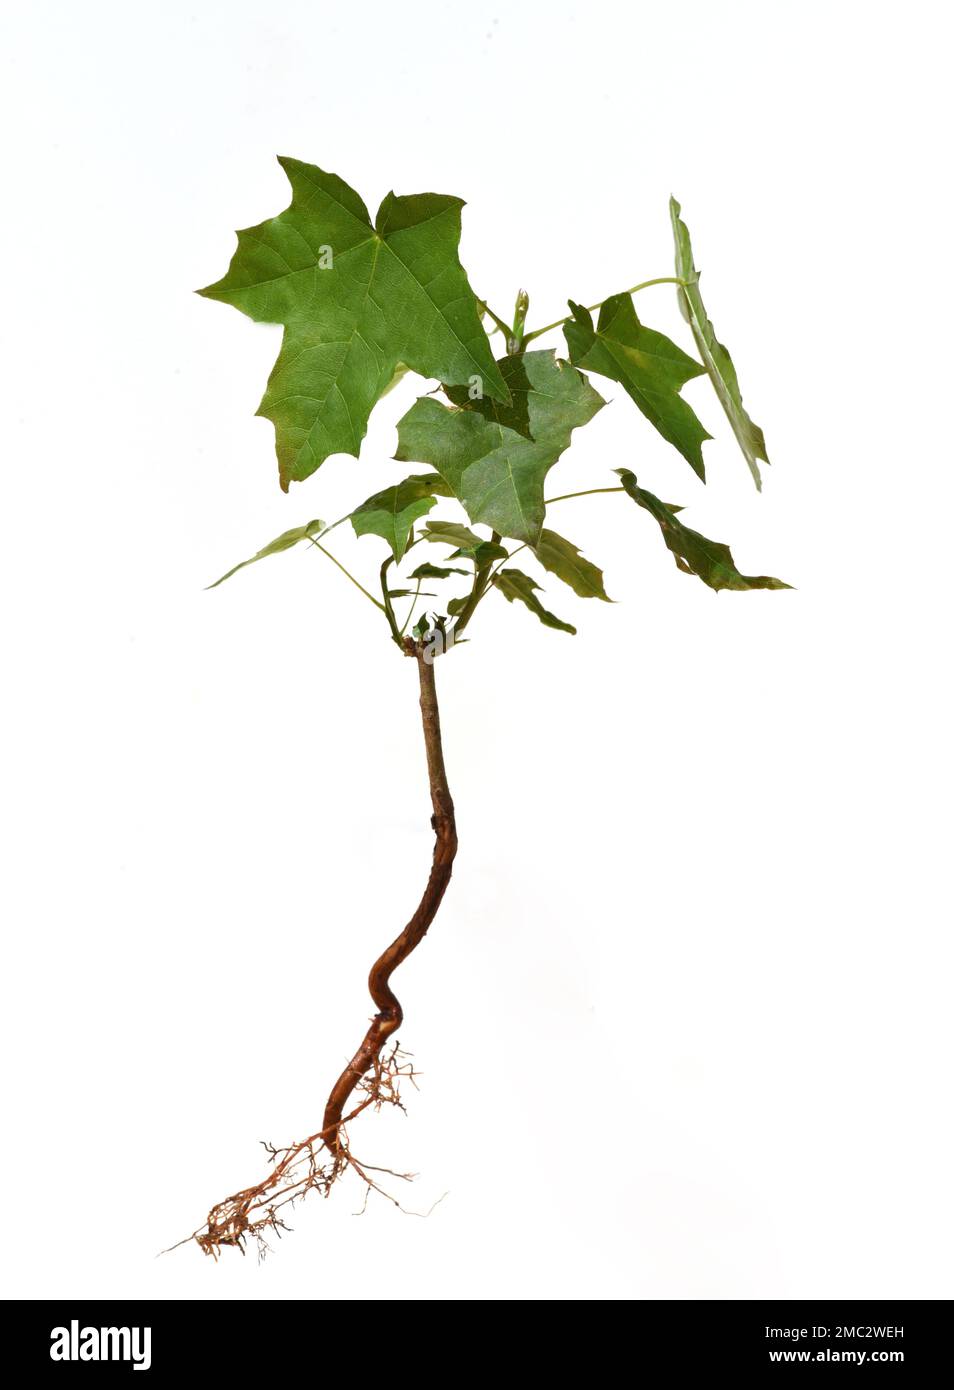 Amberbaum, Liquidambar styraciflua genannt, sind Baeume, die in Deutschland besonders im Herbst durch ihre schoen gefaerbten Blaetter auffallen. Sweet Stock Photo